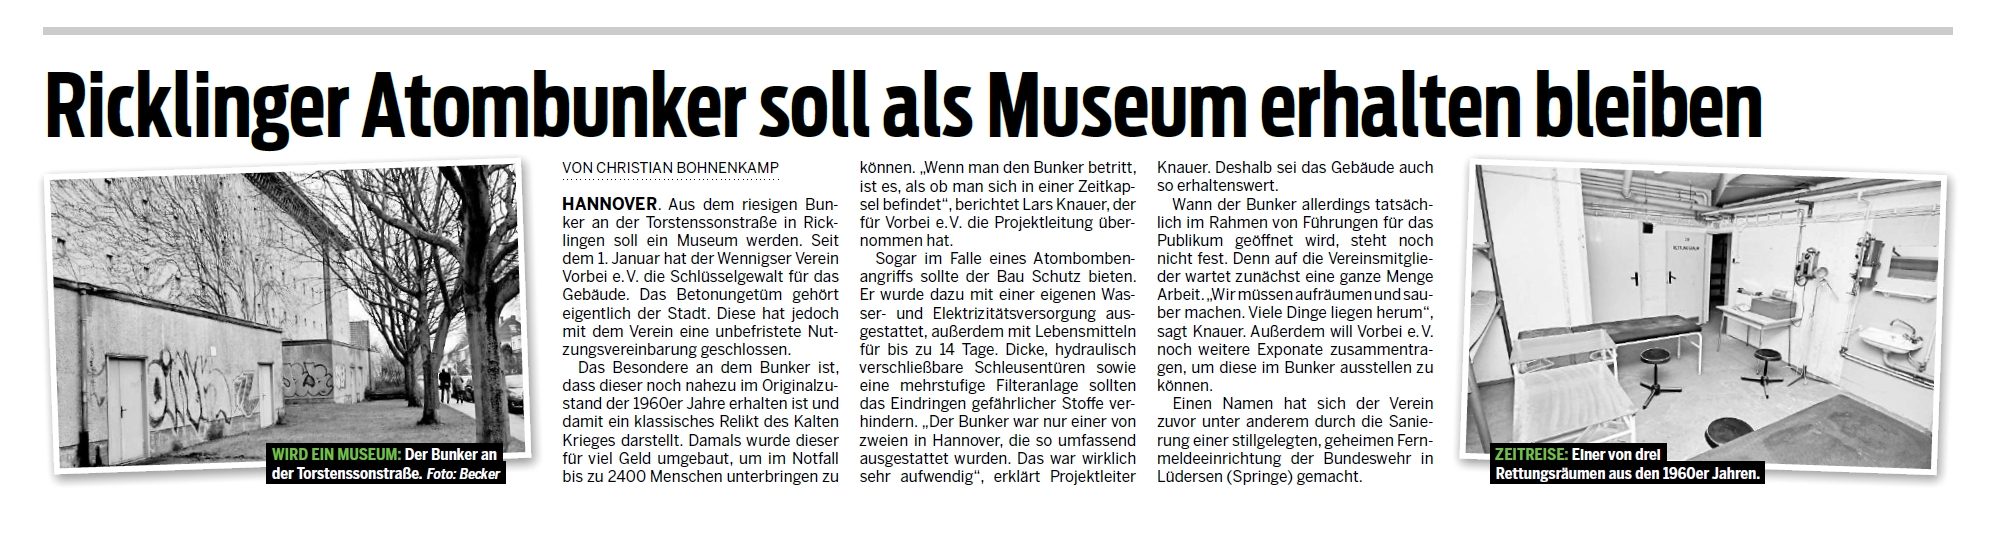 Ricklinger Atombunker soll als Museum erhalten bleiben.